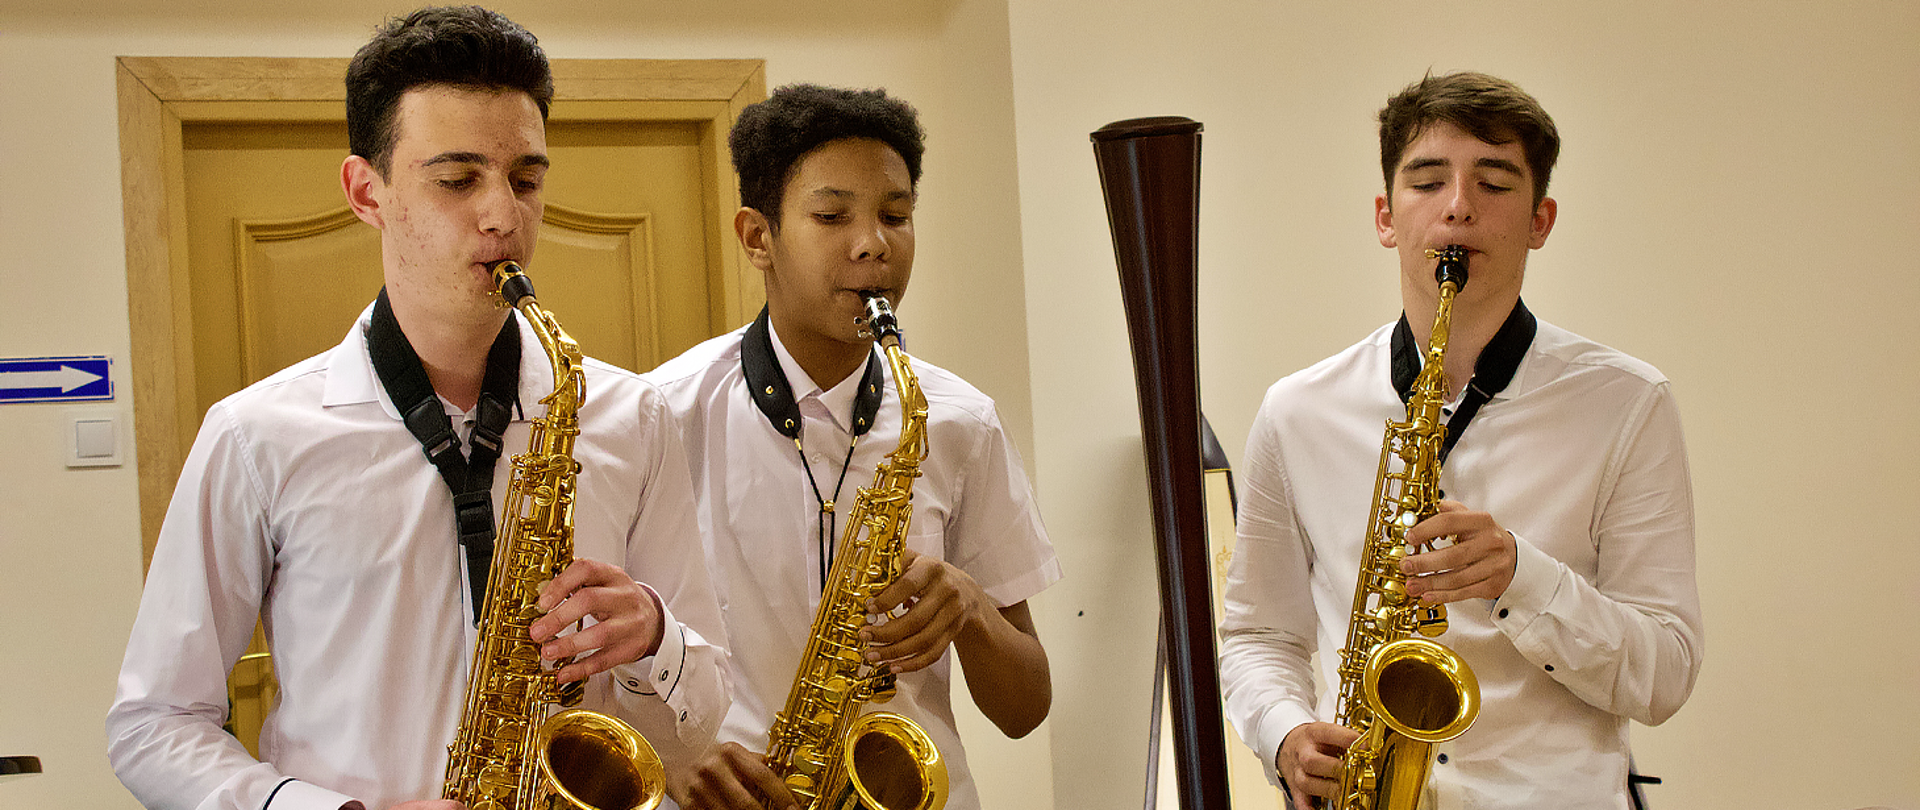 Na zdjęciu trzech chłopców gra na saksofonach.